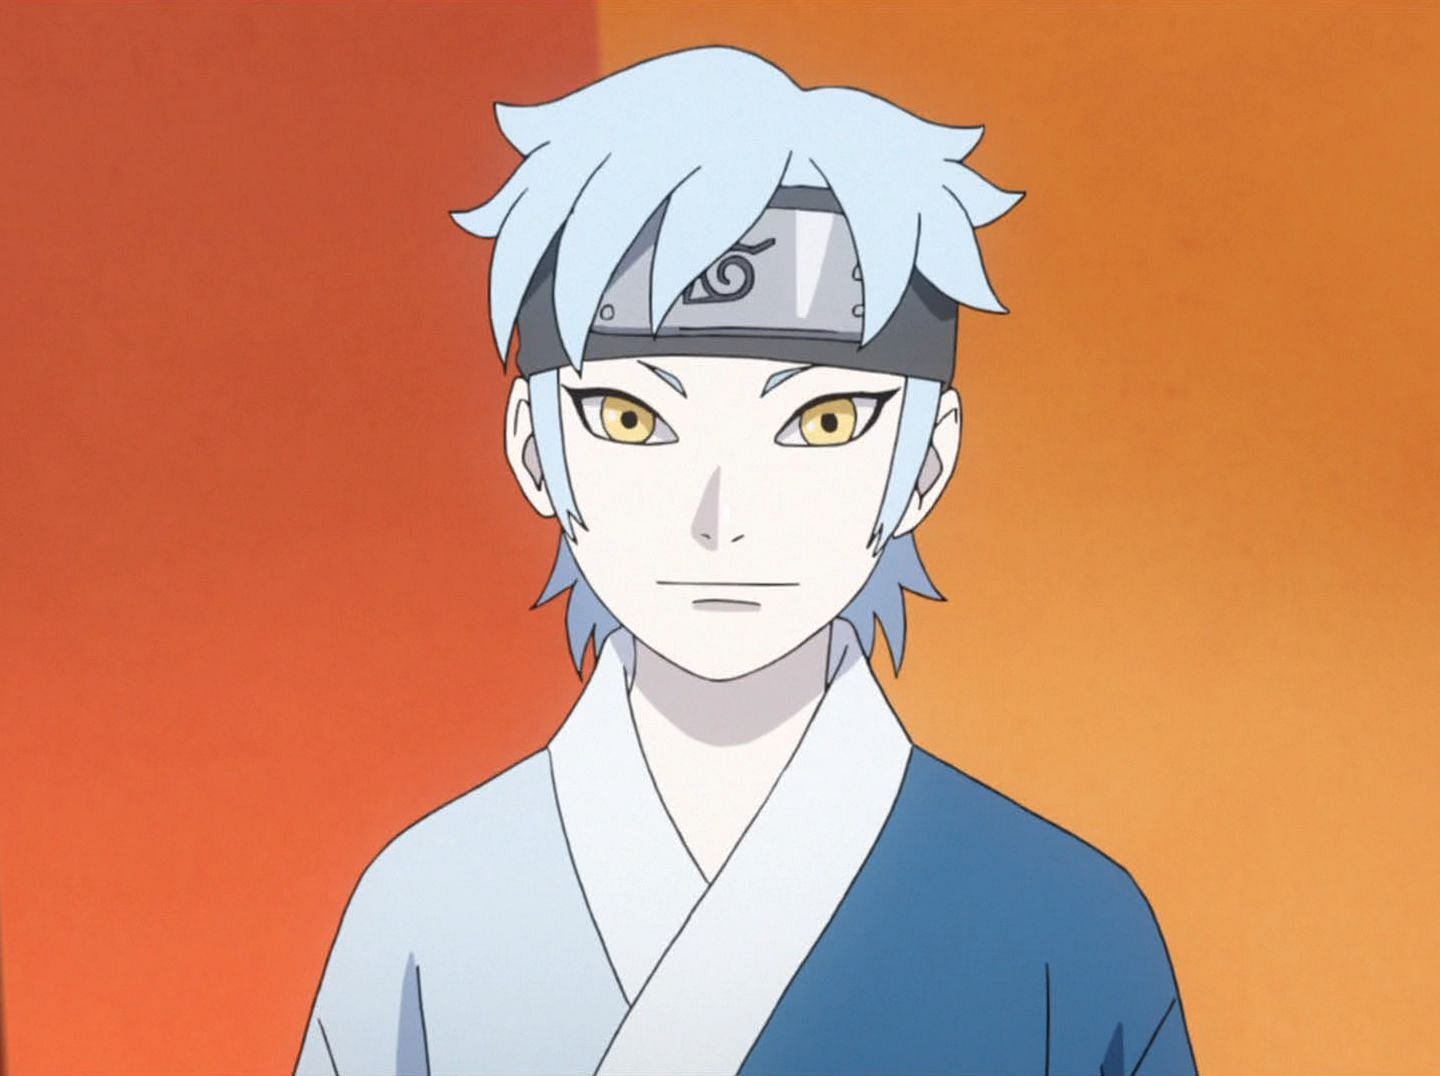 Mitsuki (Image credits: Ukyo Kodachi/Shueisha, Viz Media, Boruto: Naruto Next Generations)